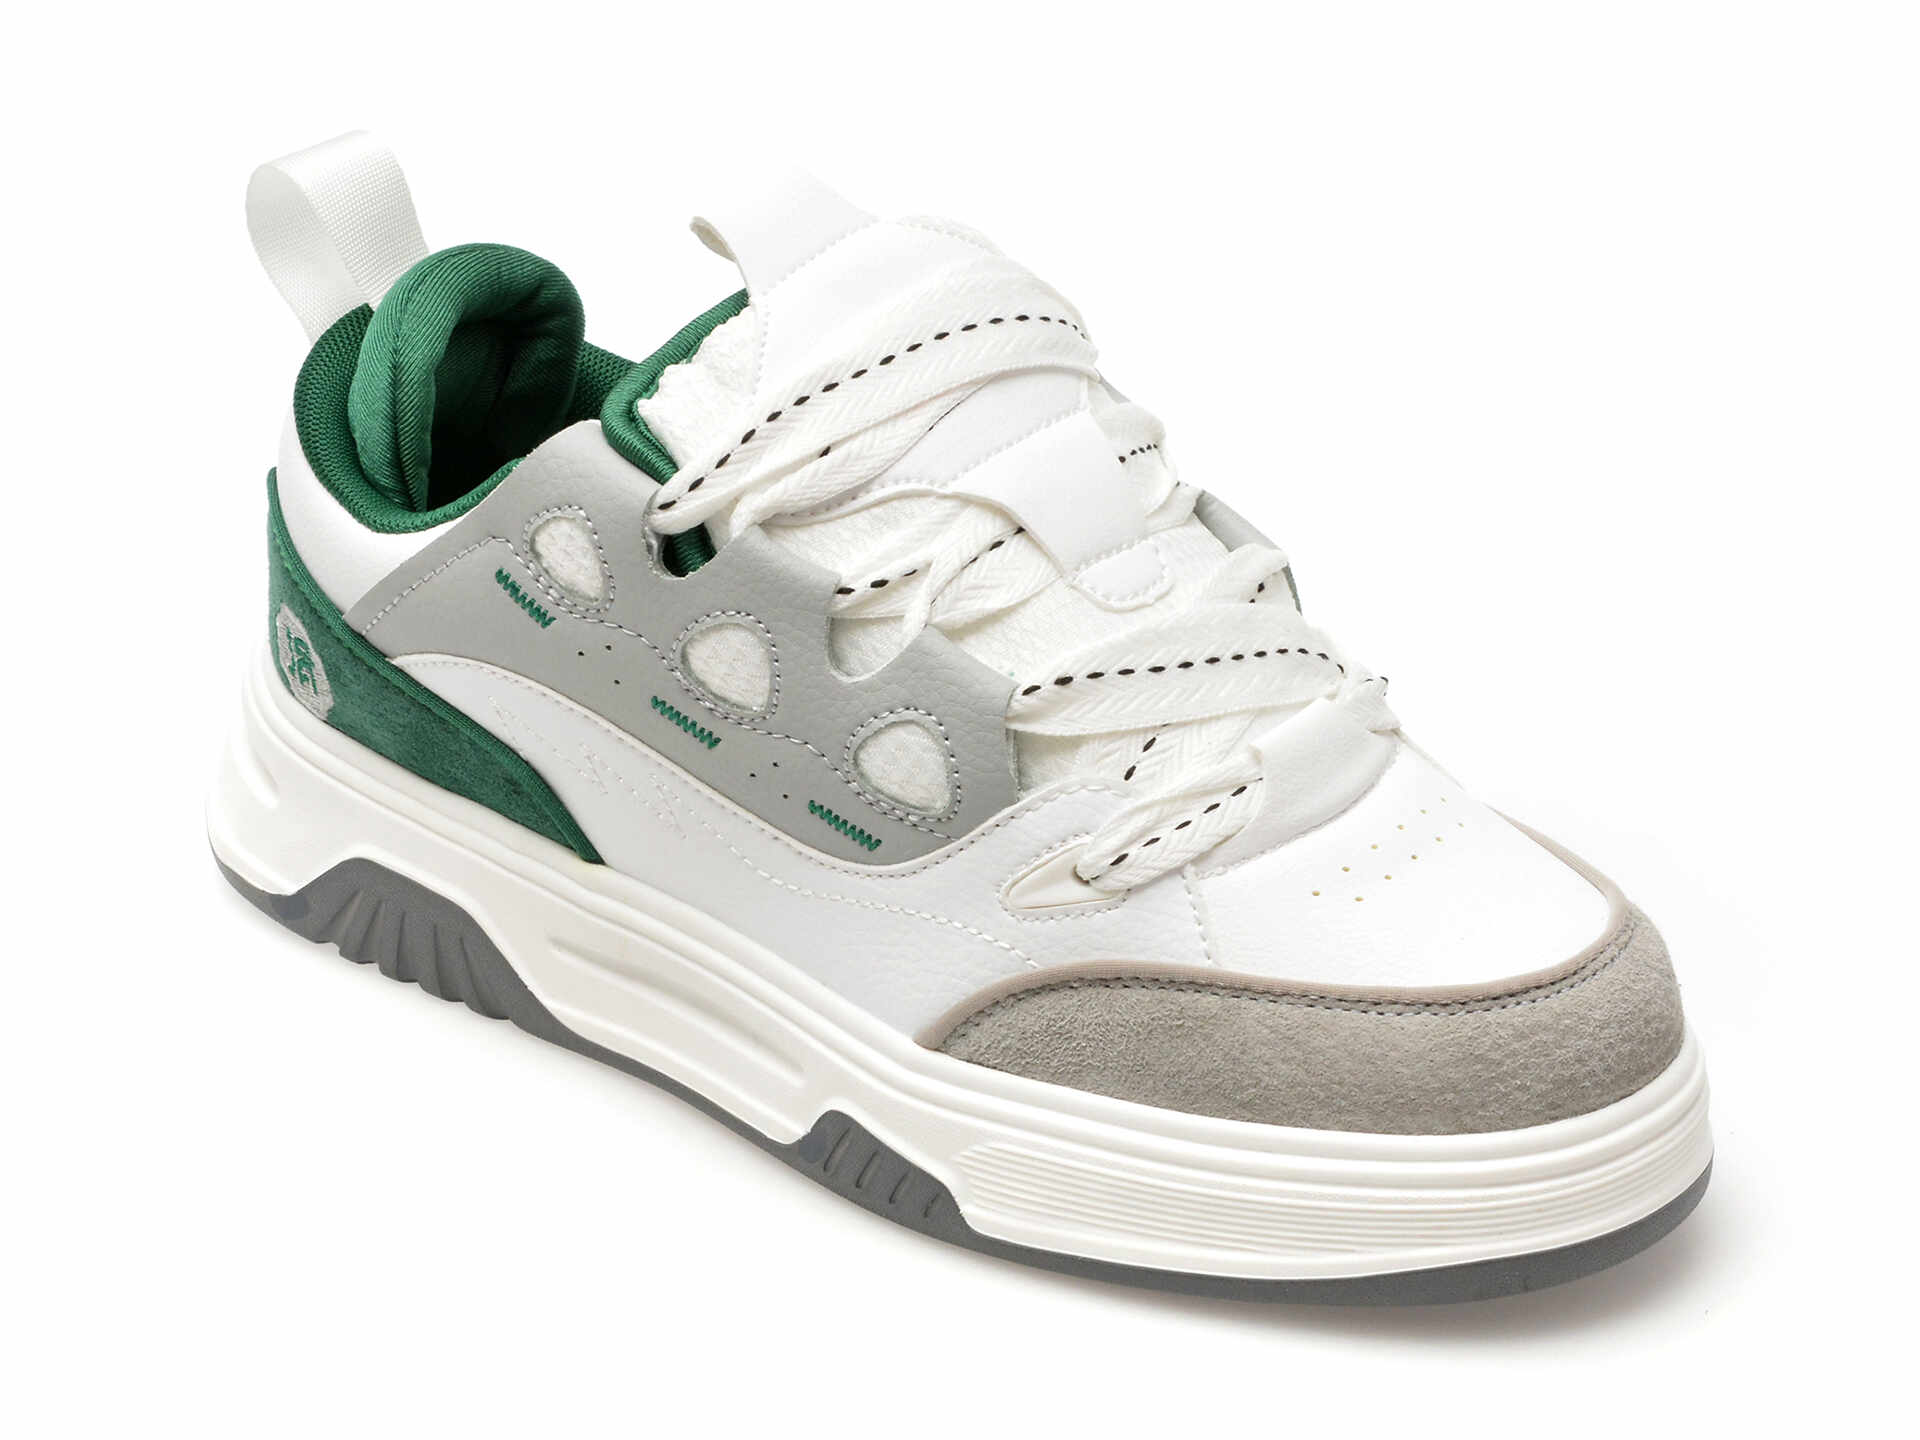 Pantofi sport BITE THE BULLET albi, 26006, din piele ecologica